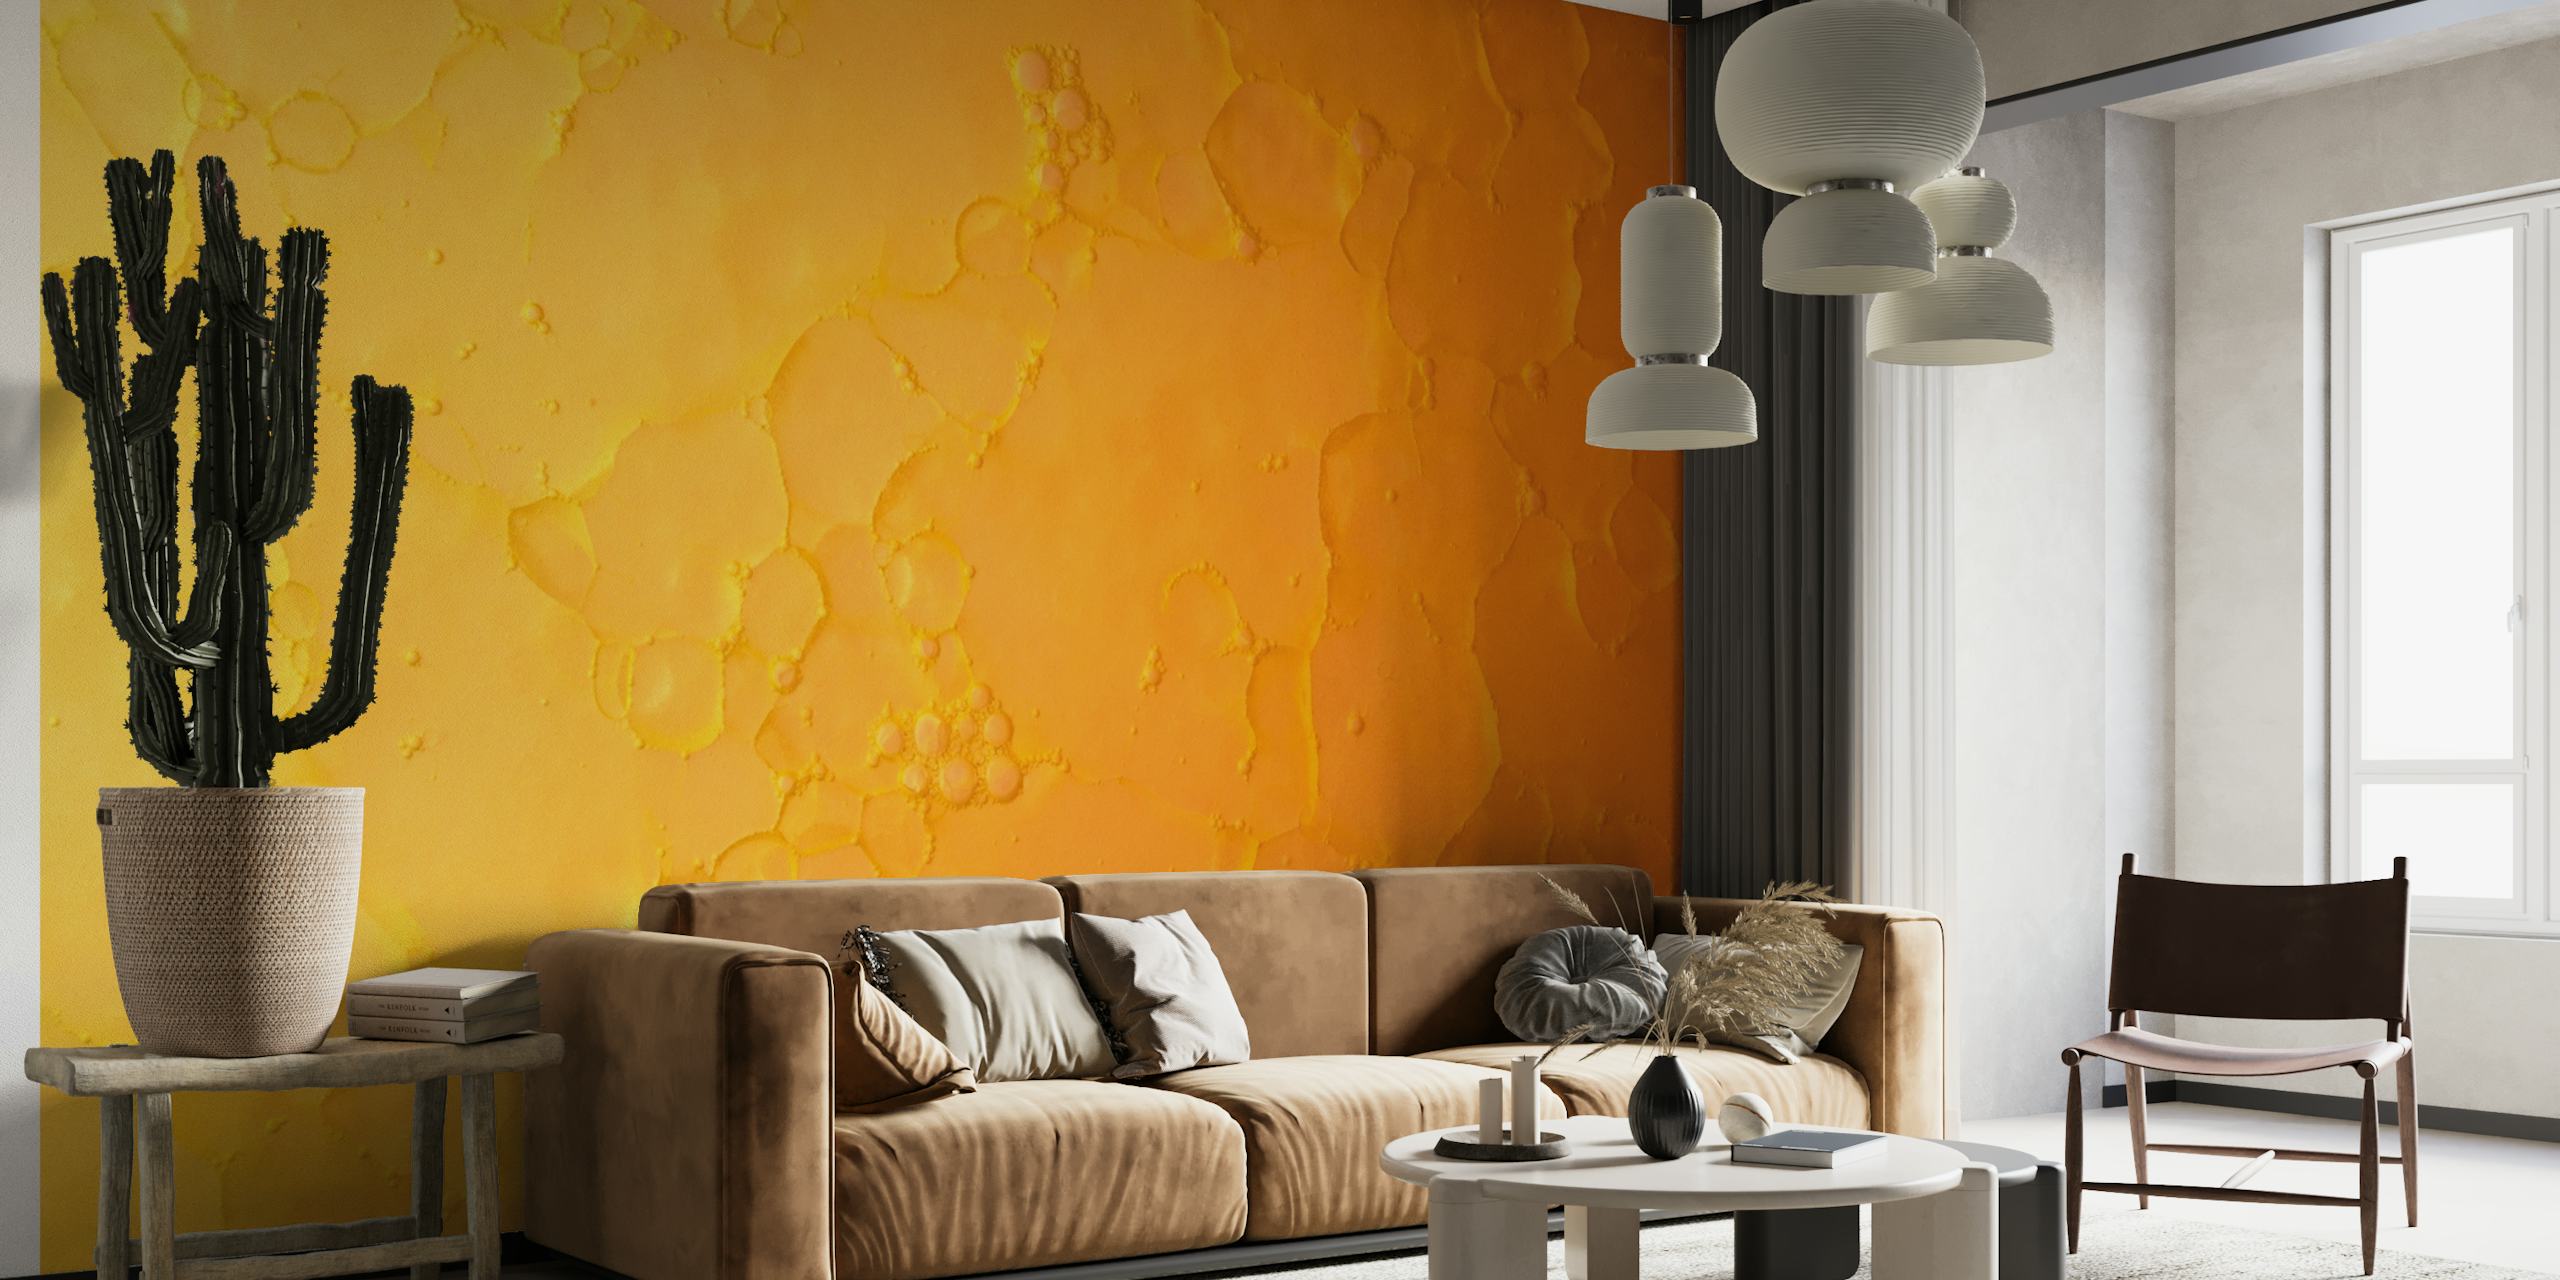 Abstrakti oranssi öljykuvioinen seinämaalaus dynaamisella pyörteellä